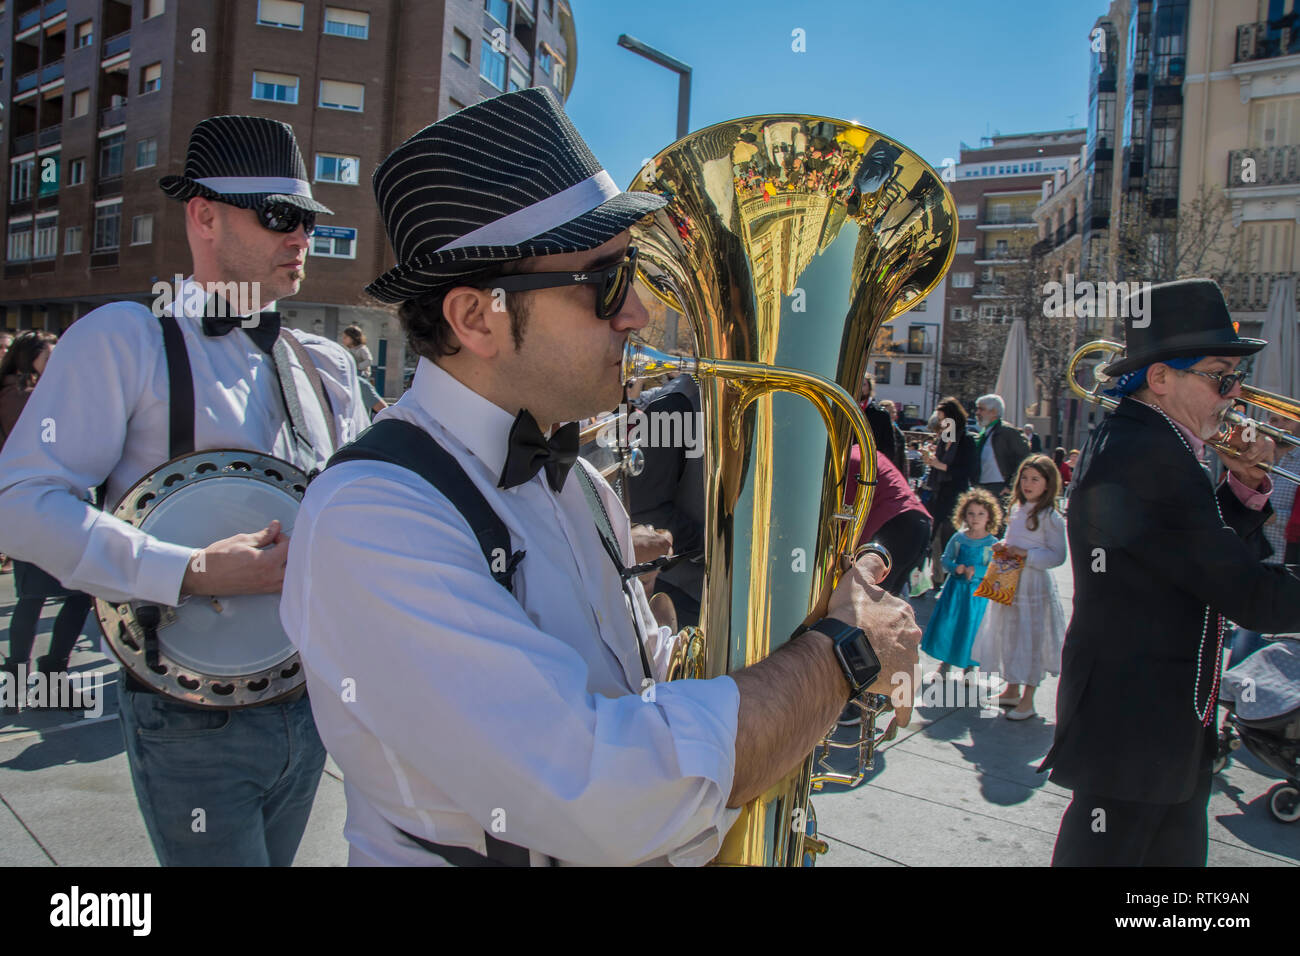 Feiern des Karneval auf den Straßen von Madrid nahm dieses Mal statt in der Nähe von Salamanca. Auf dem Bild eine Gruppe Musiker Stil New Orleans Jazz Musik, Kredit: Alberto Sibaja Stockfoto